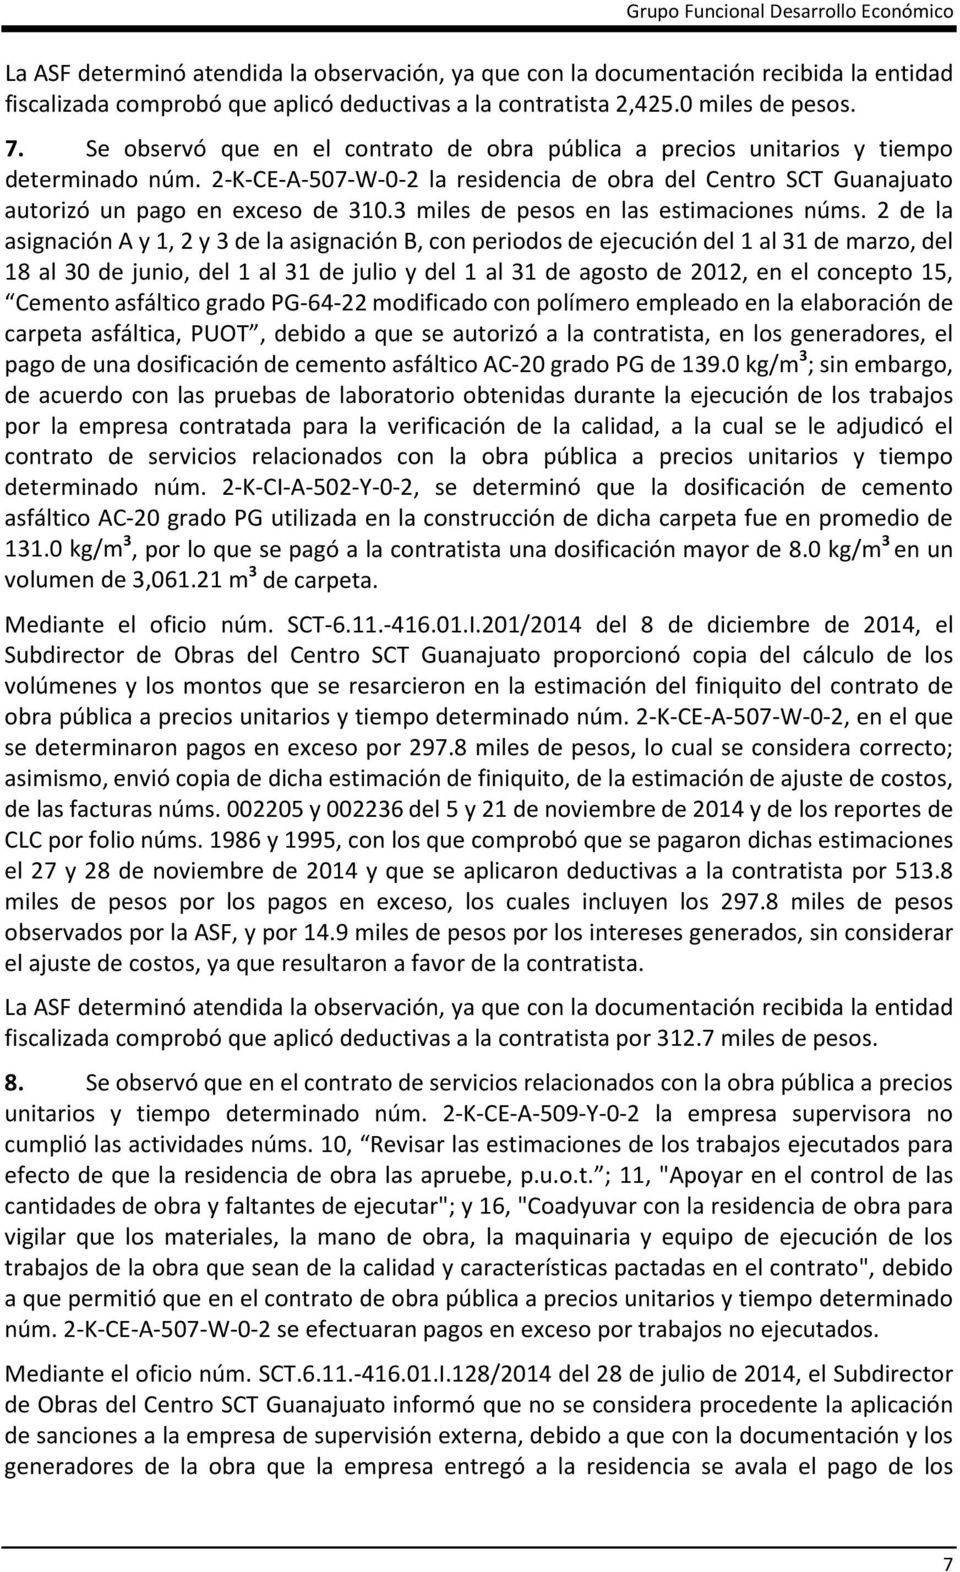 2-K-CE-A-507-W-0-2 la residencia de obra del Centro SCT Guanajuato autorizó un pago en exceso de 310.3 miles de pesos en las estimaciones núms.